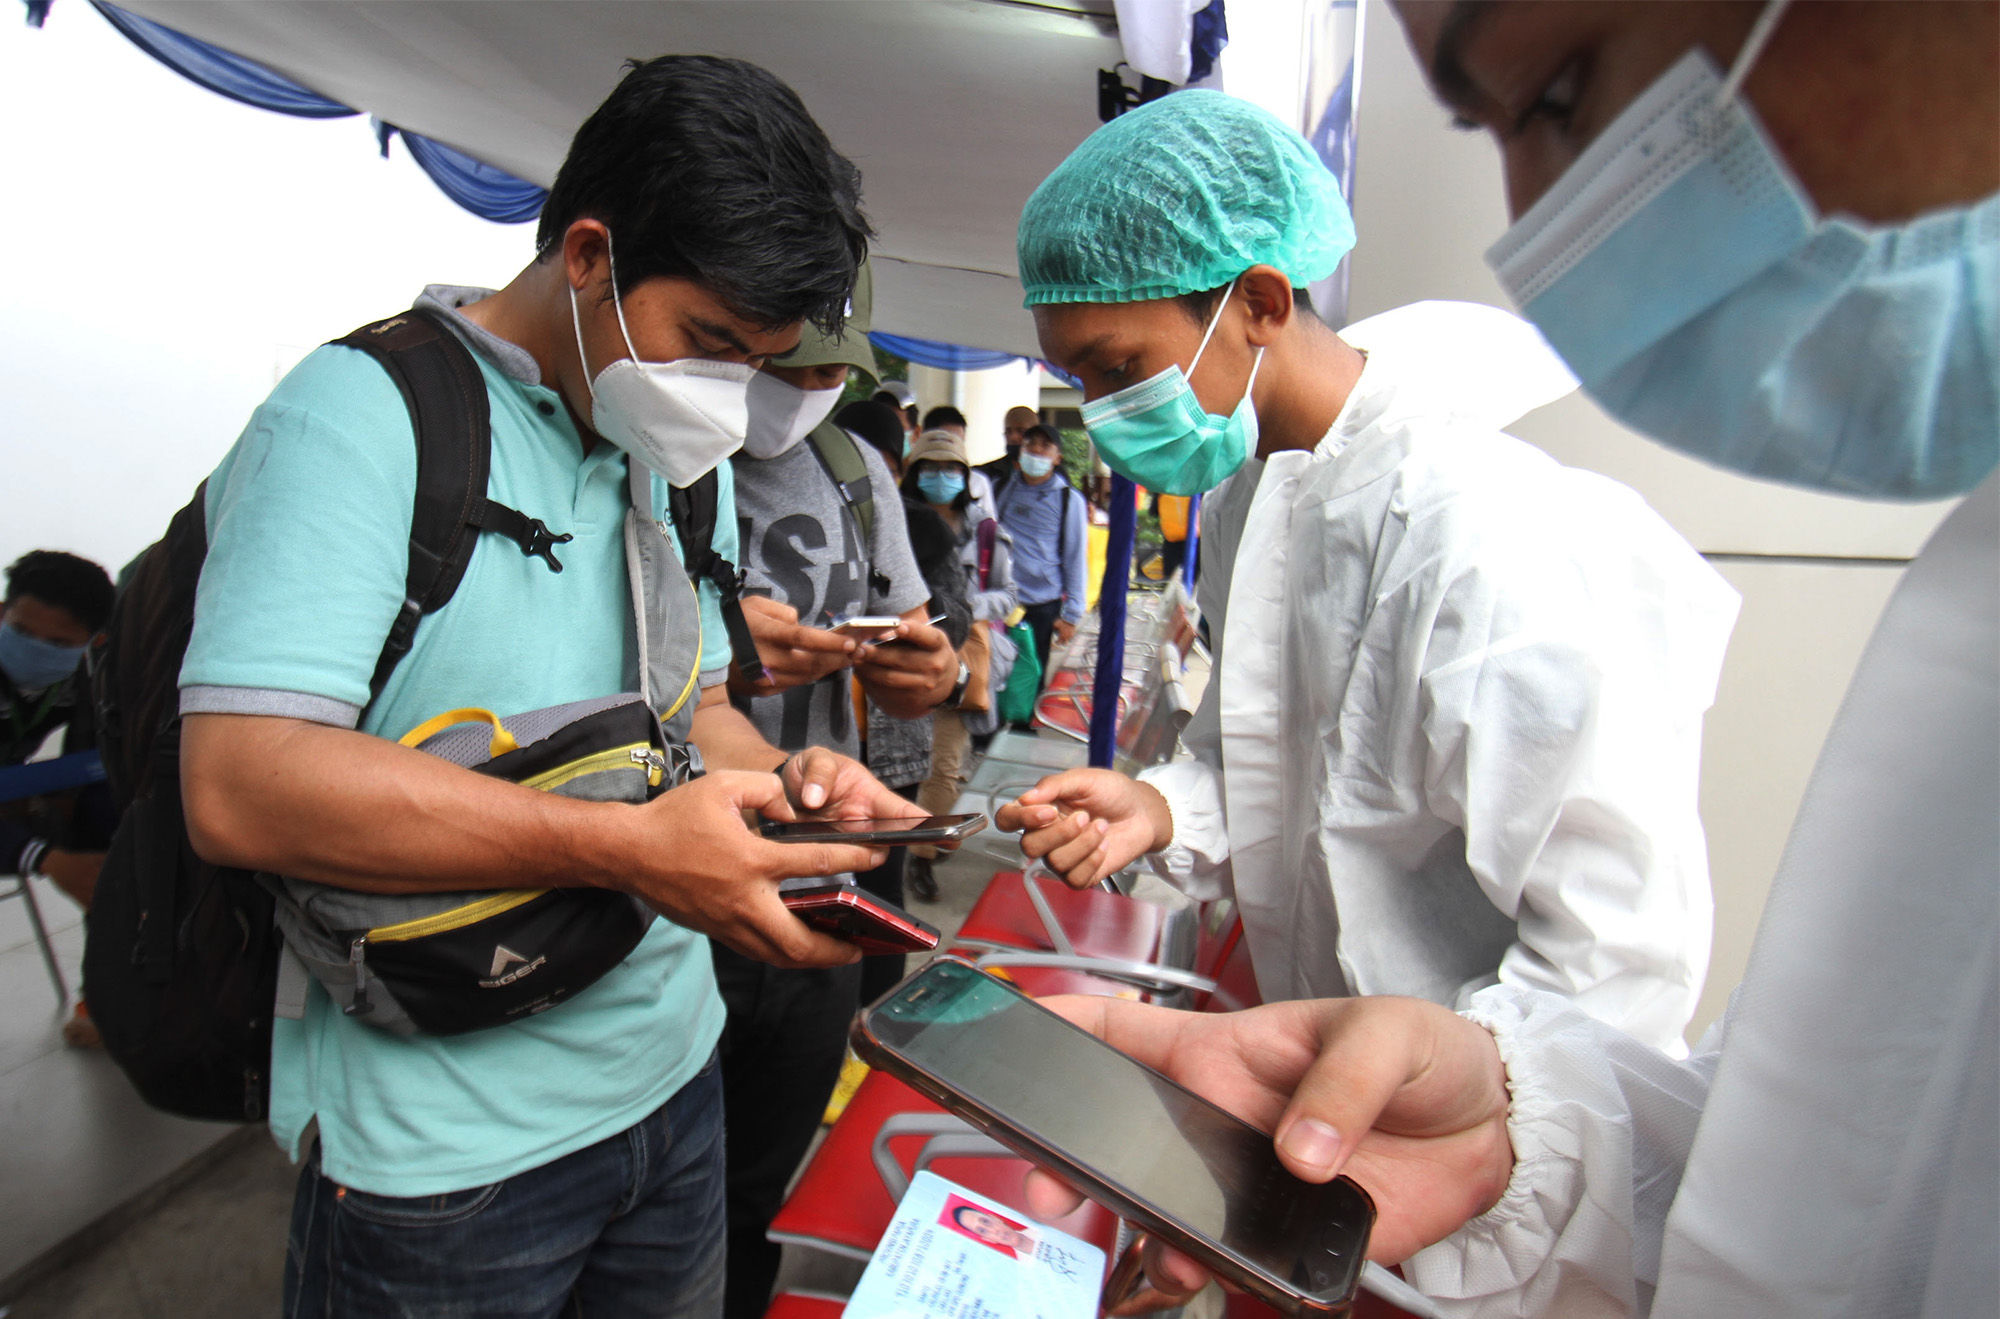 <p>Calon penumpang pesawat mengantre untuk mengikuti tes cepat antigen di area Terminal 2 Bandara Soekarno Hatta, Tangerang, Banten, Selasa, 22 Desember 2020. Foto: Panji Asmoro/TrenAsia</p>
